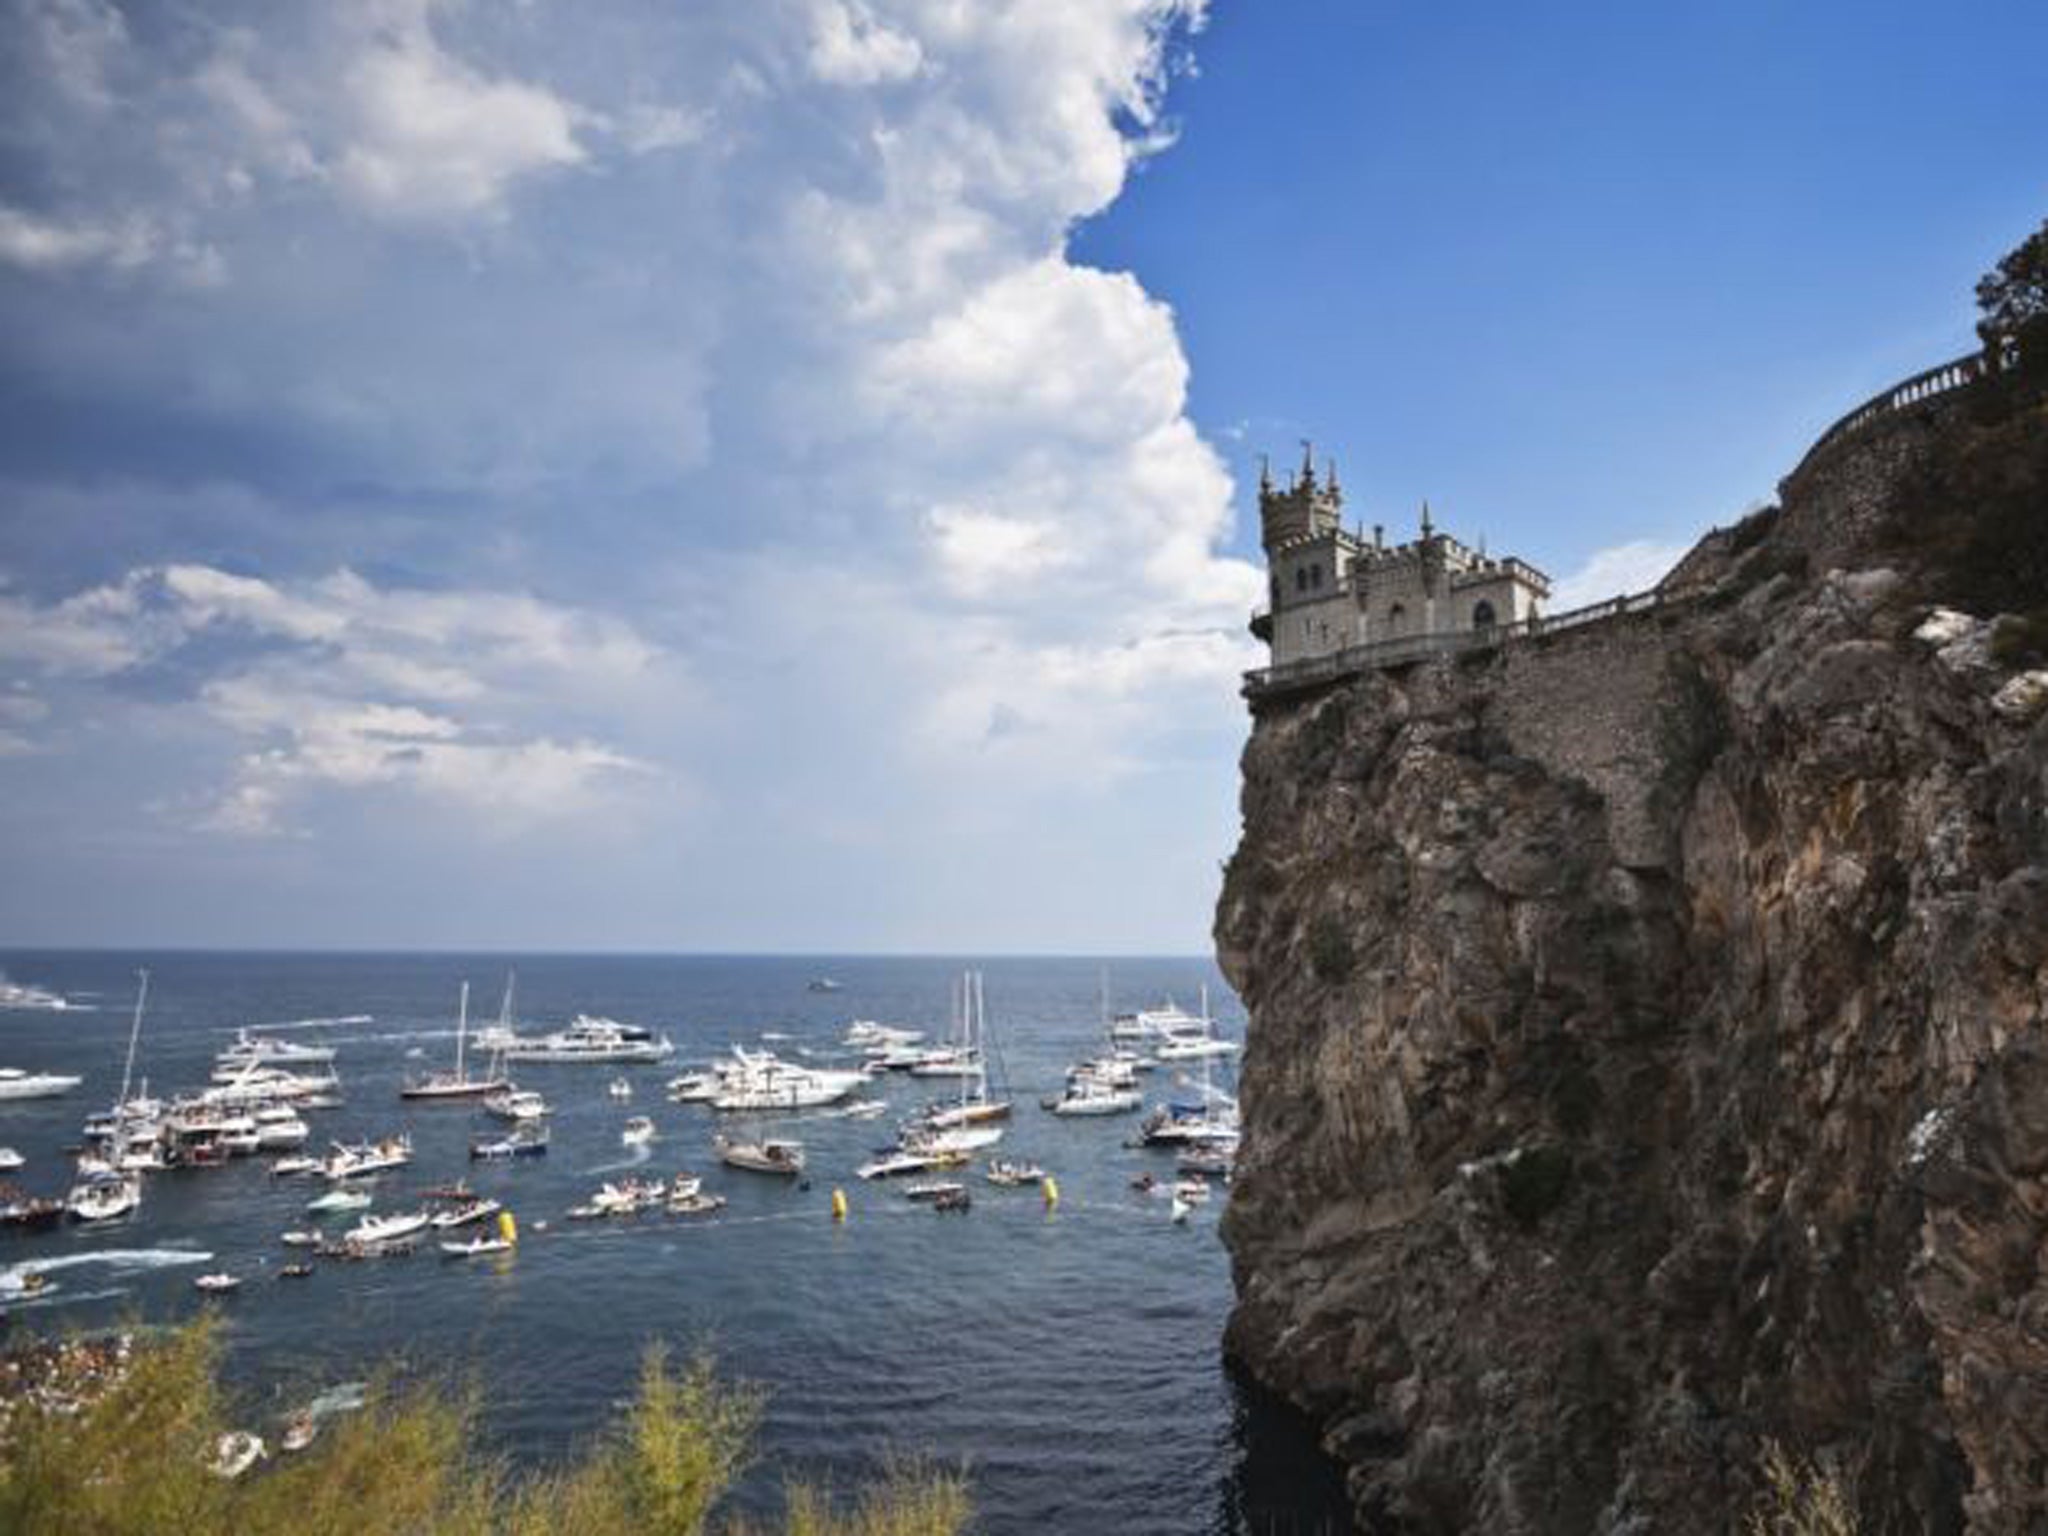 Swallow's Nest Castle, Crimea